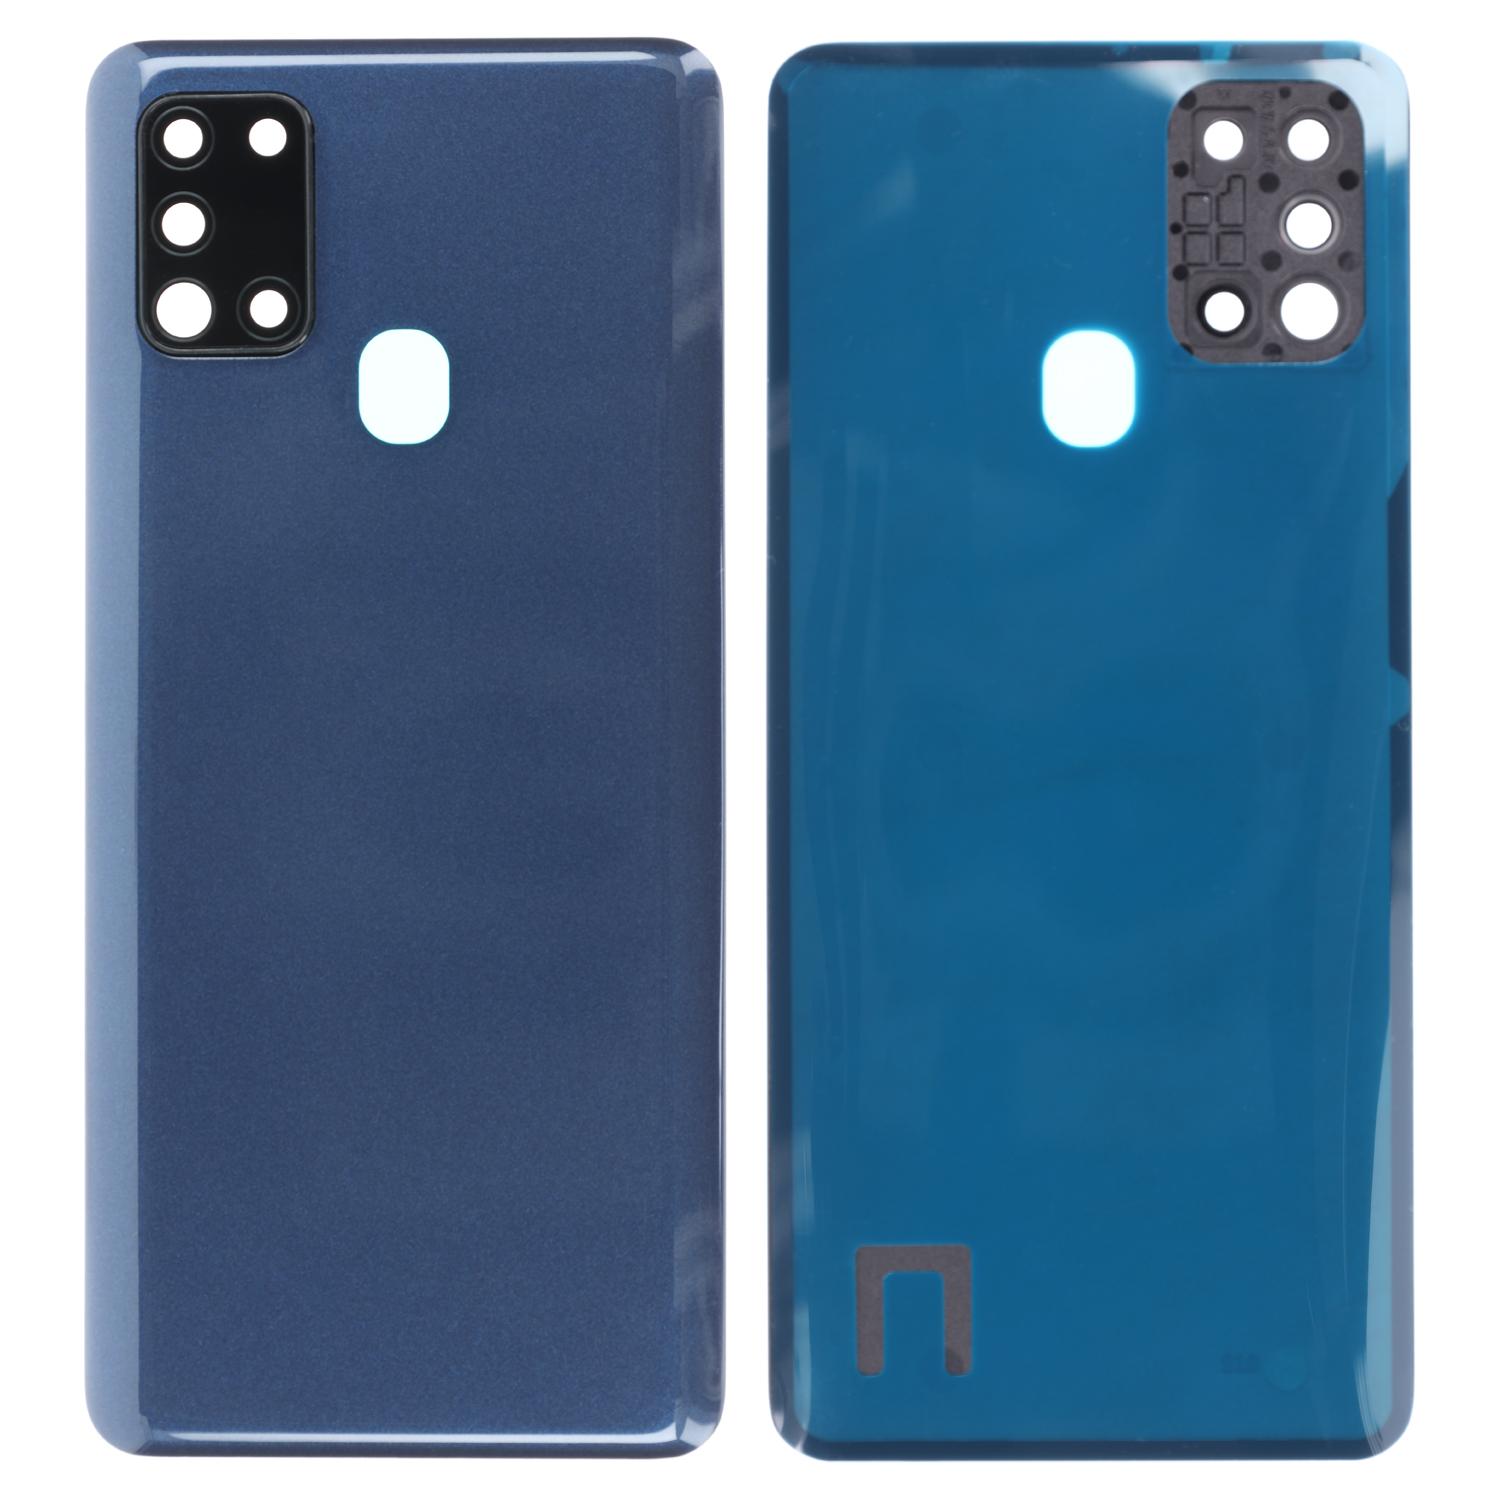 Akkudeckel kompatibel zu Samsung Galaxy A21s (A217F), Blau